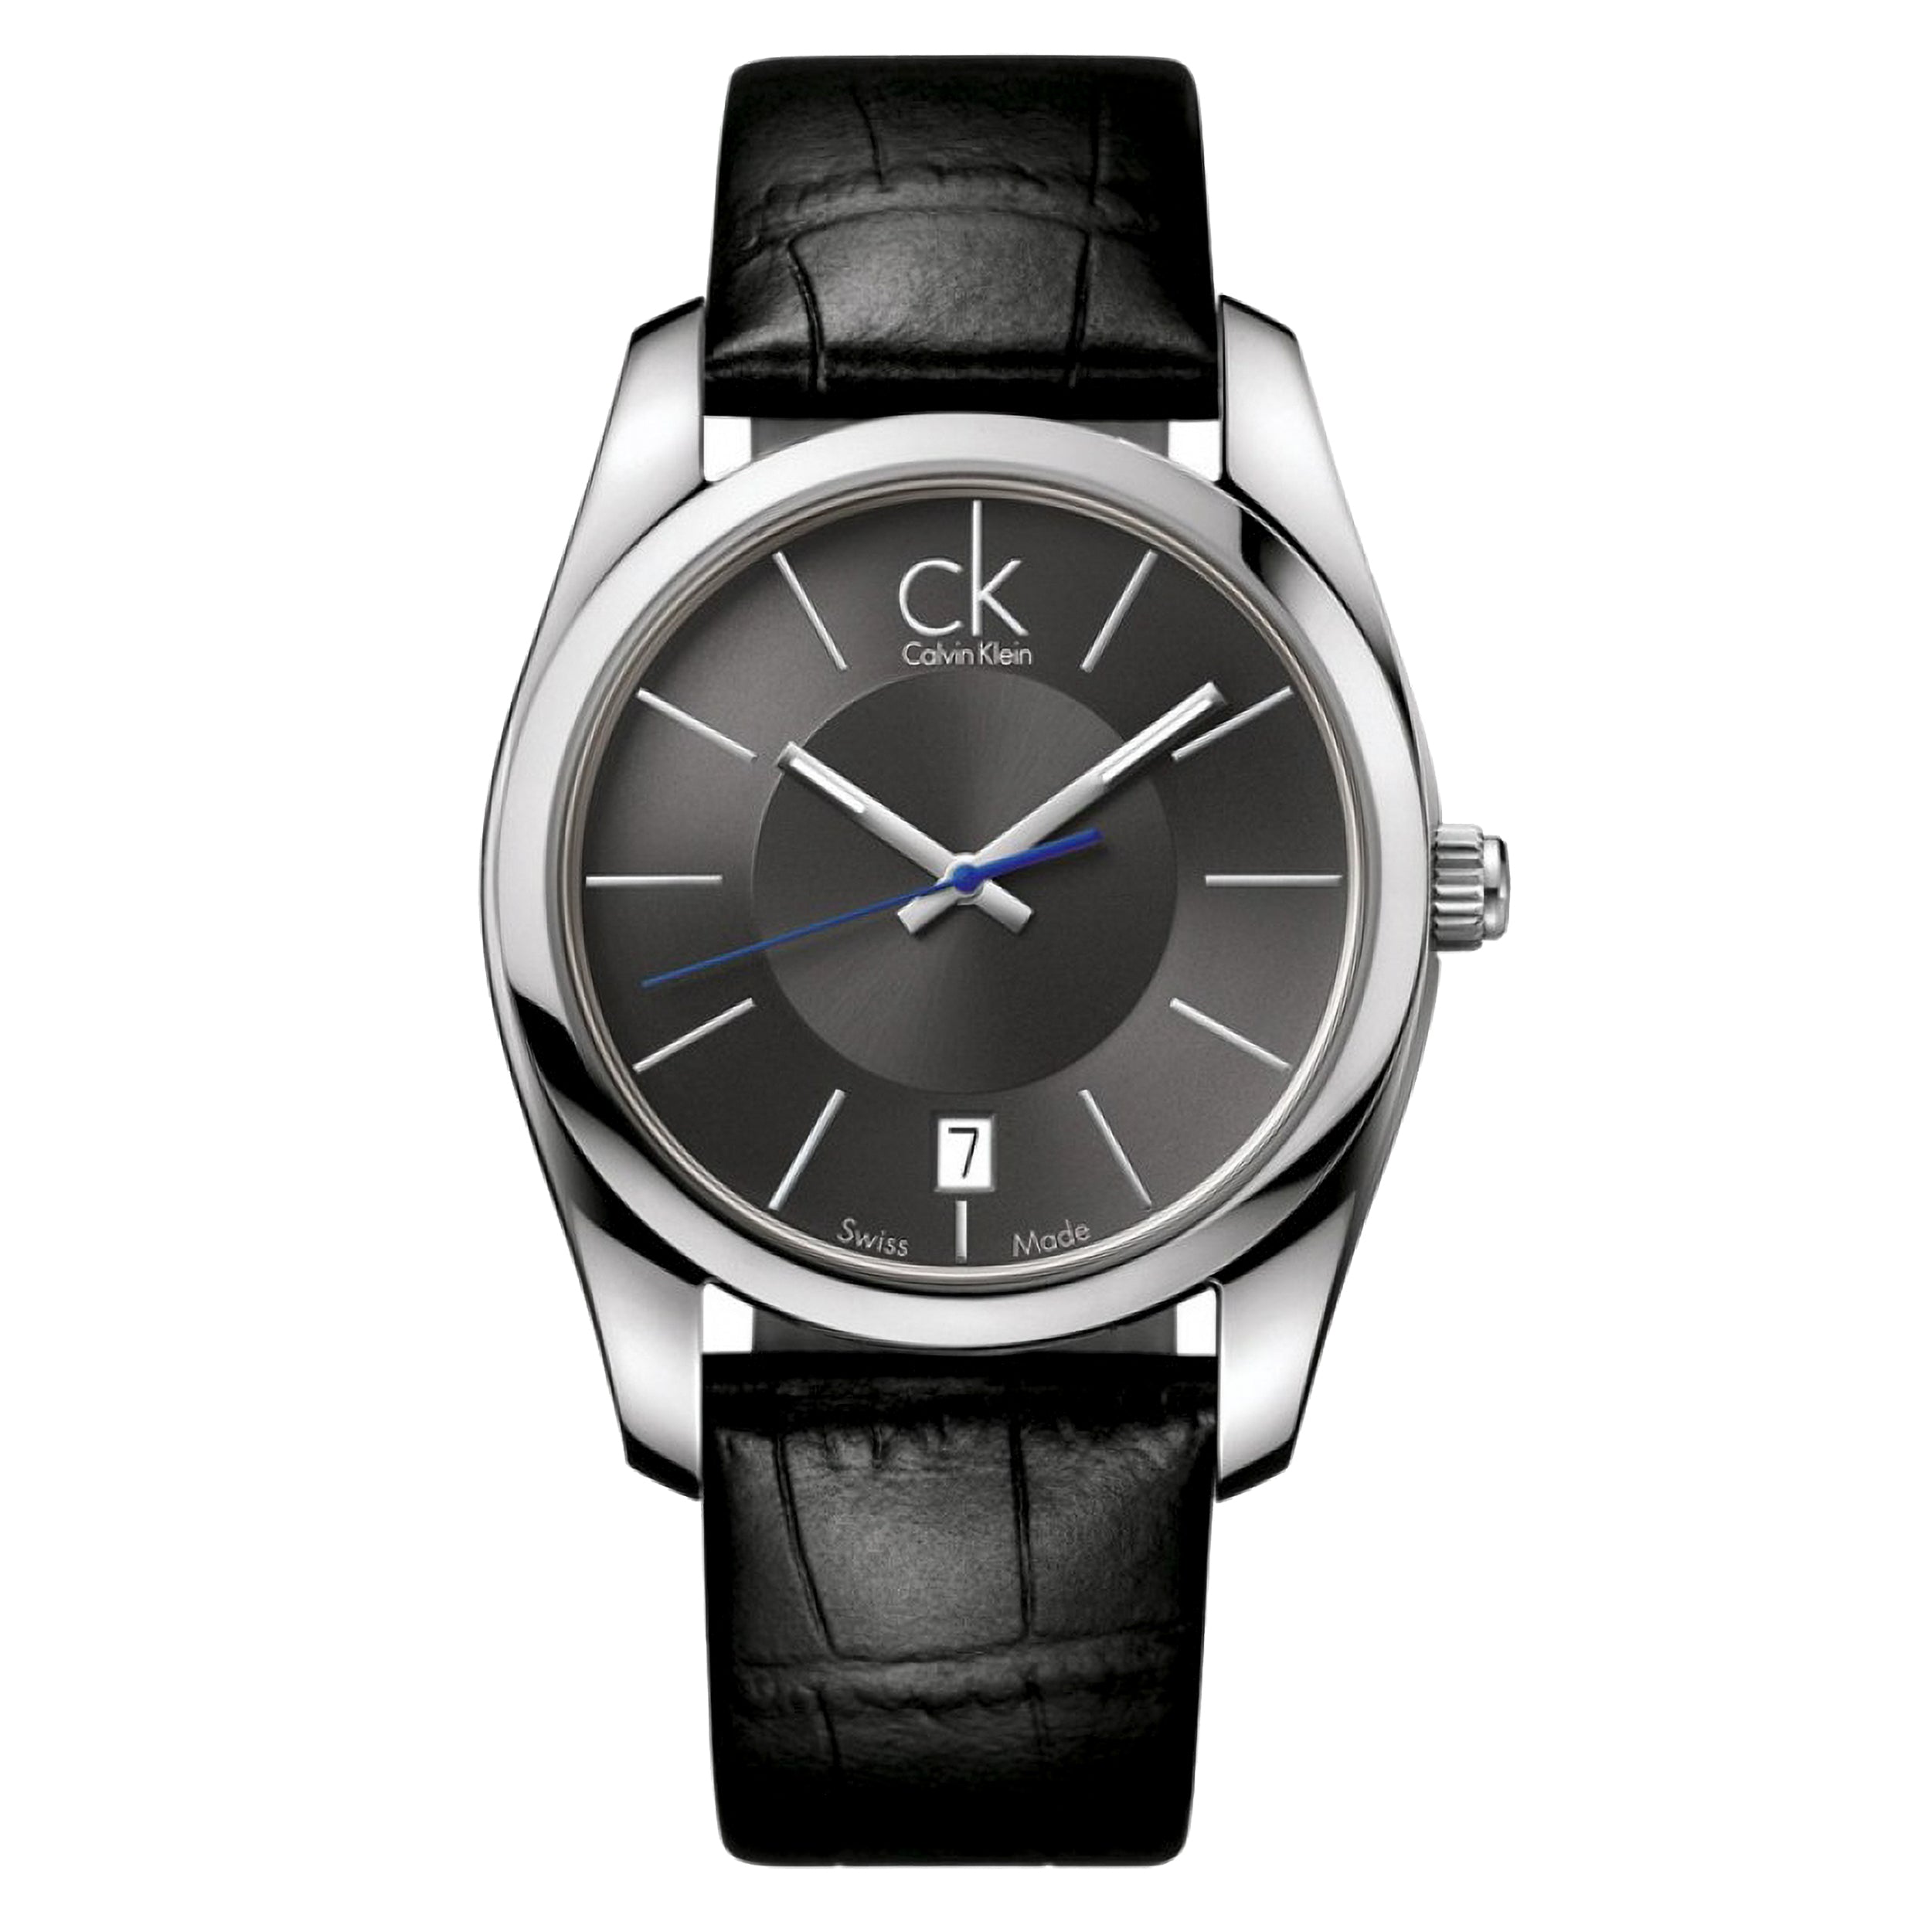 CALVIN KLEIN】Swiss Made kok211 - 腕時計(アナログ)